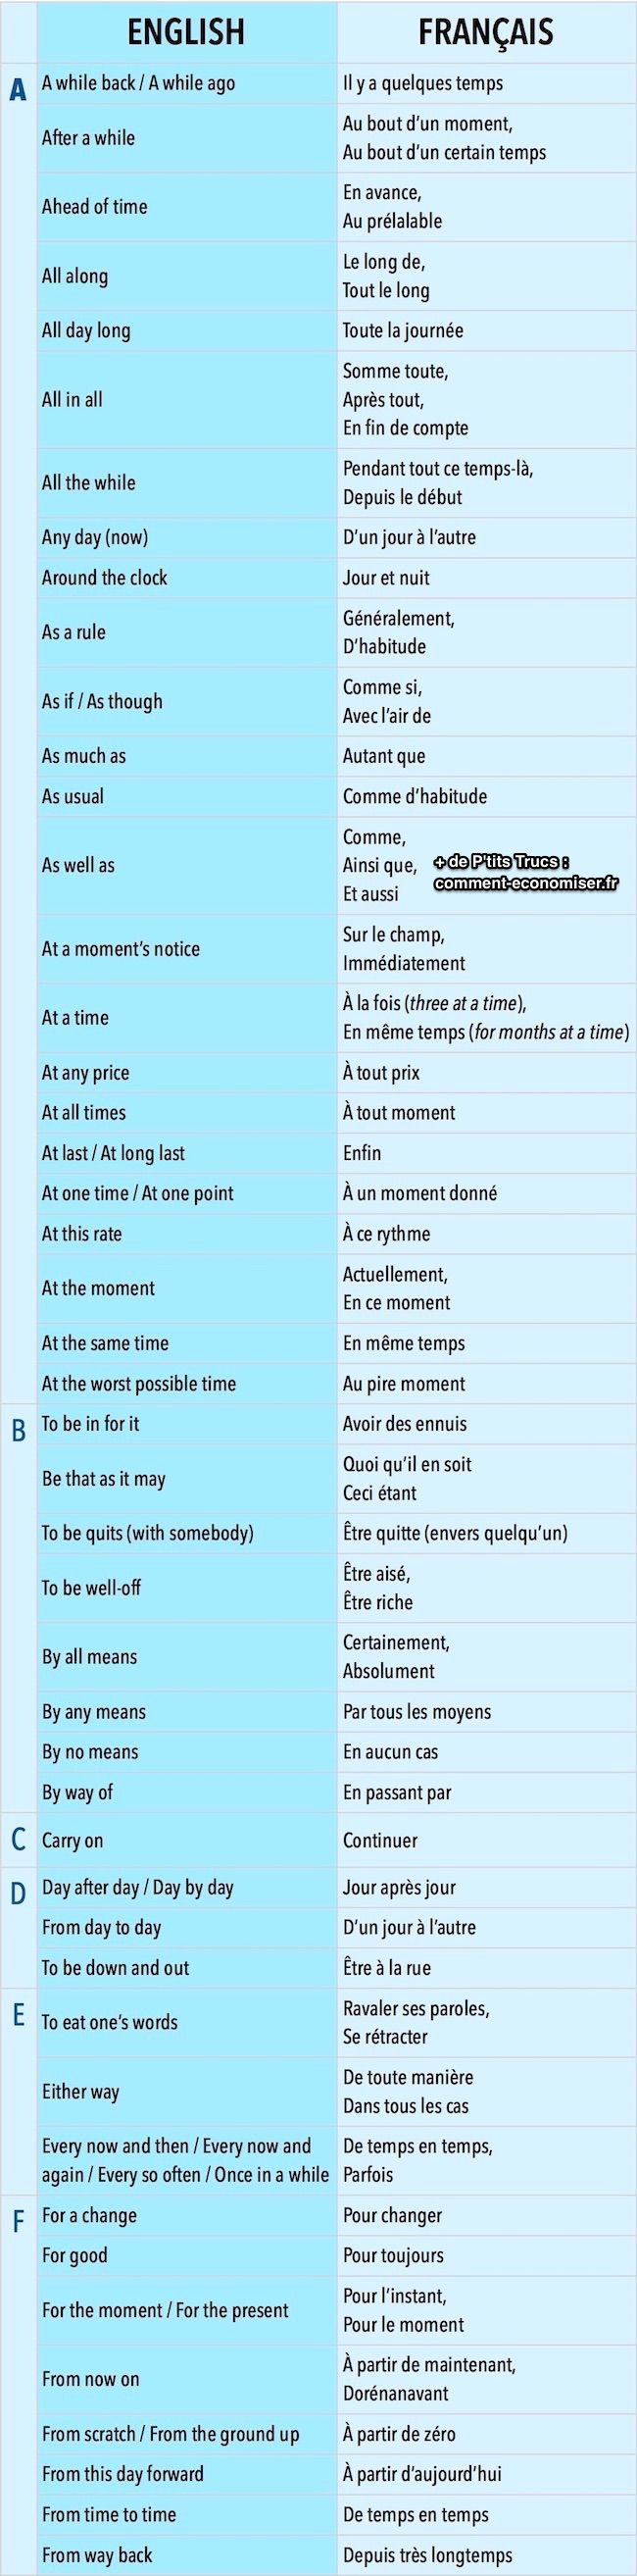 רשימה של ביטויים מהירים וקלים לדבר באנגלית